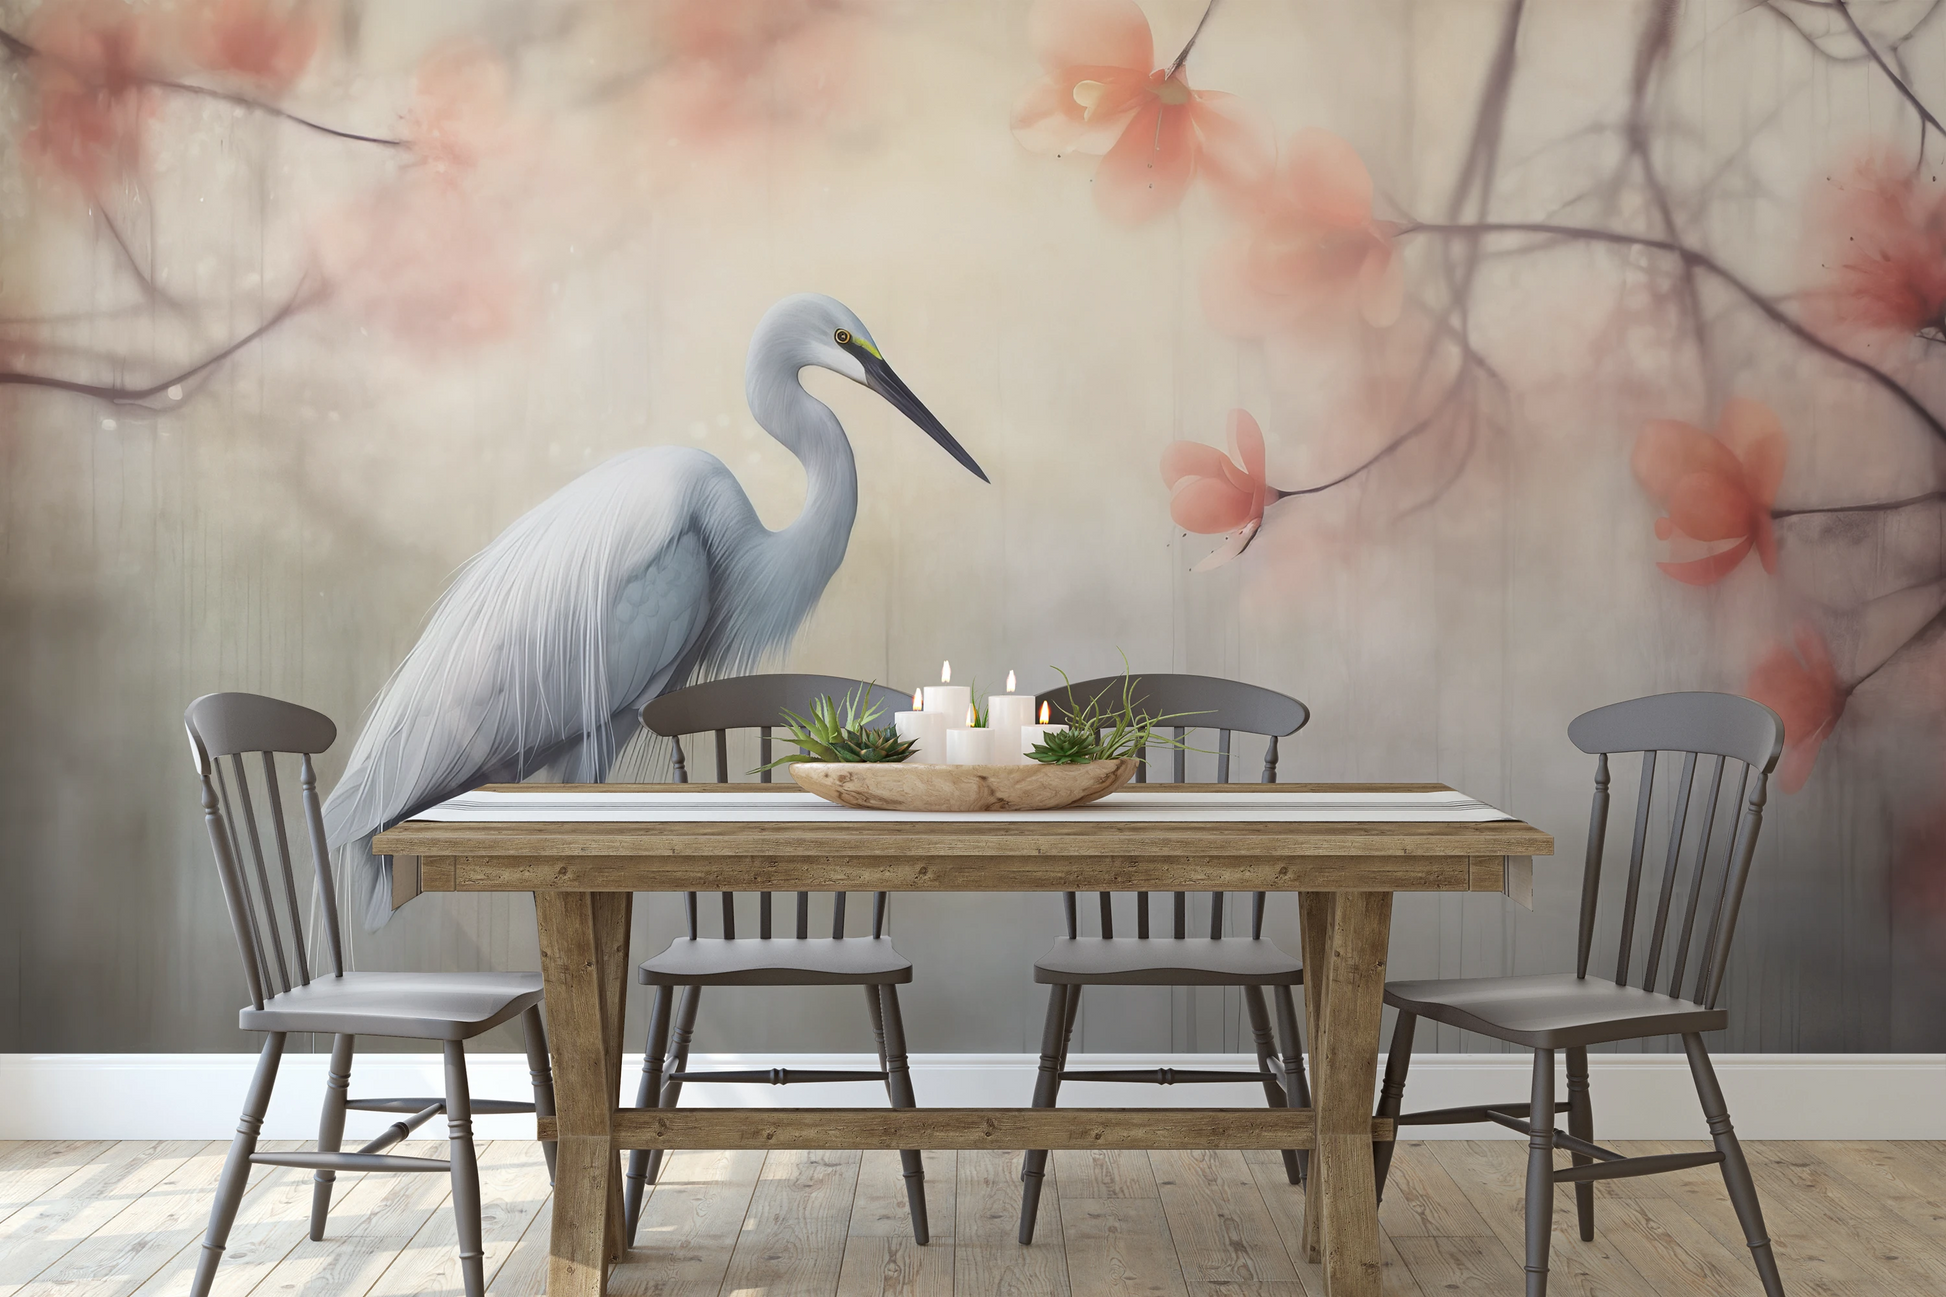 Wzór fototapety malowanej o nazwie Heron Elegance pokazanej w aranżacji wnętrza.